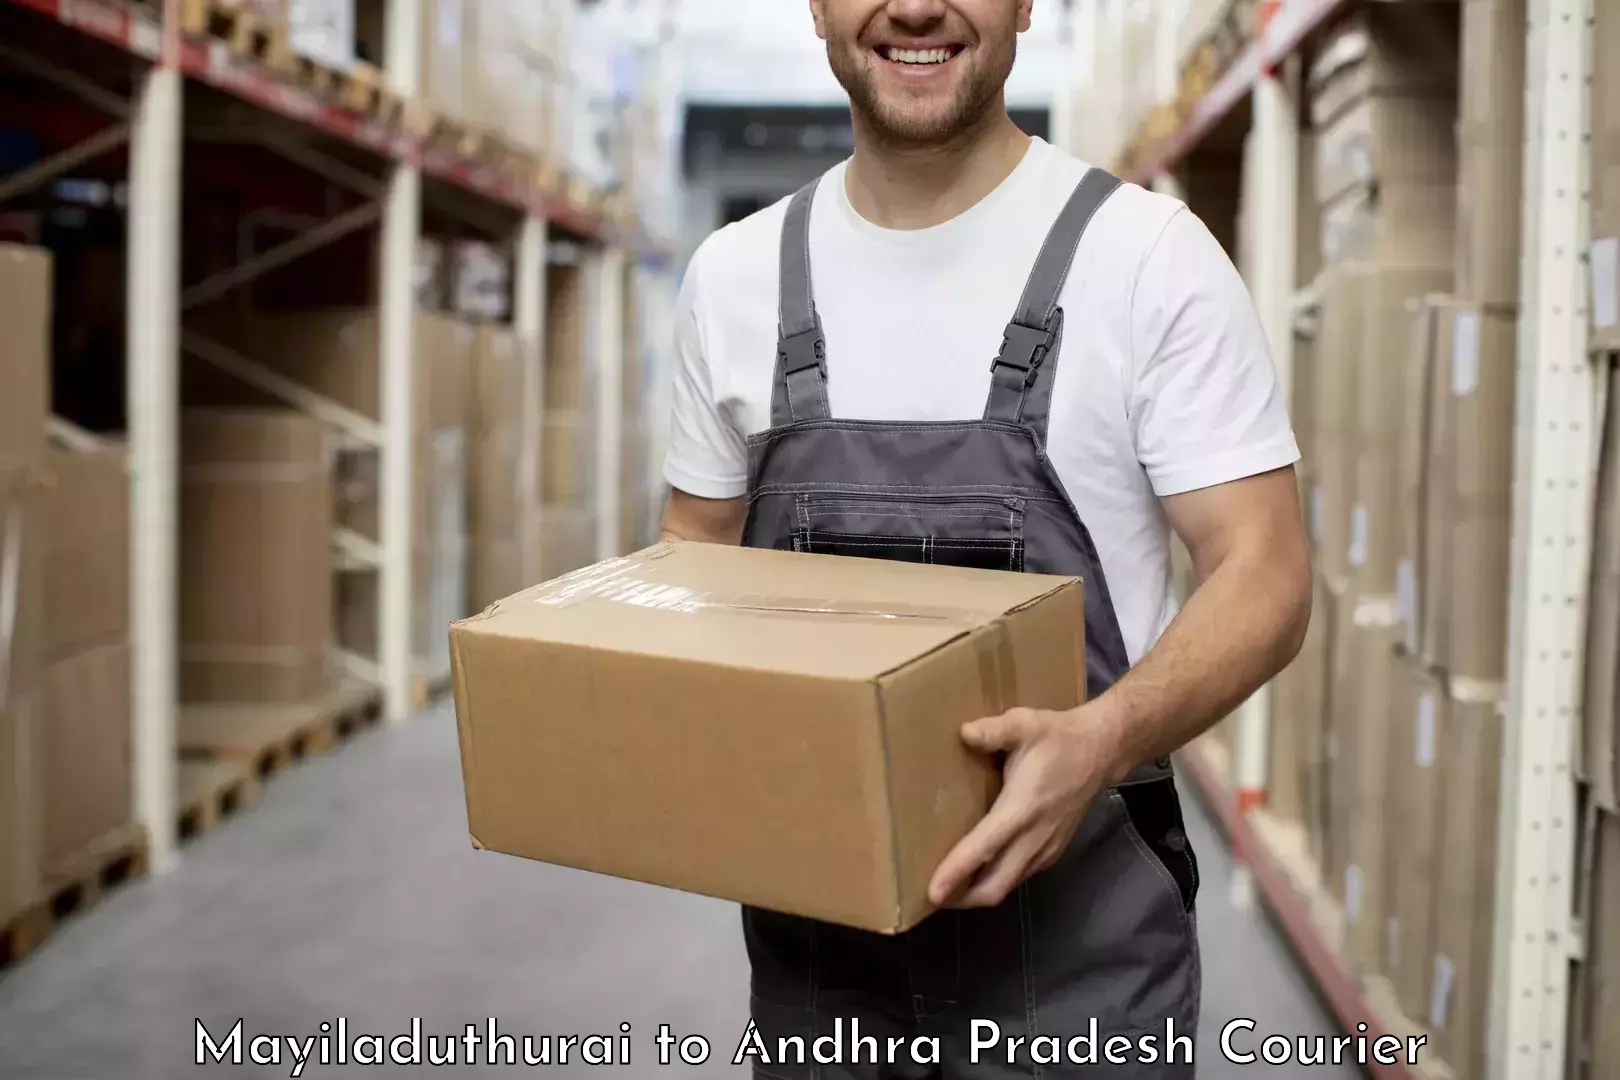 Reliable package handling in Mayiladuthurai to Malikipuram